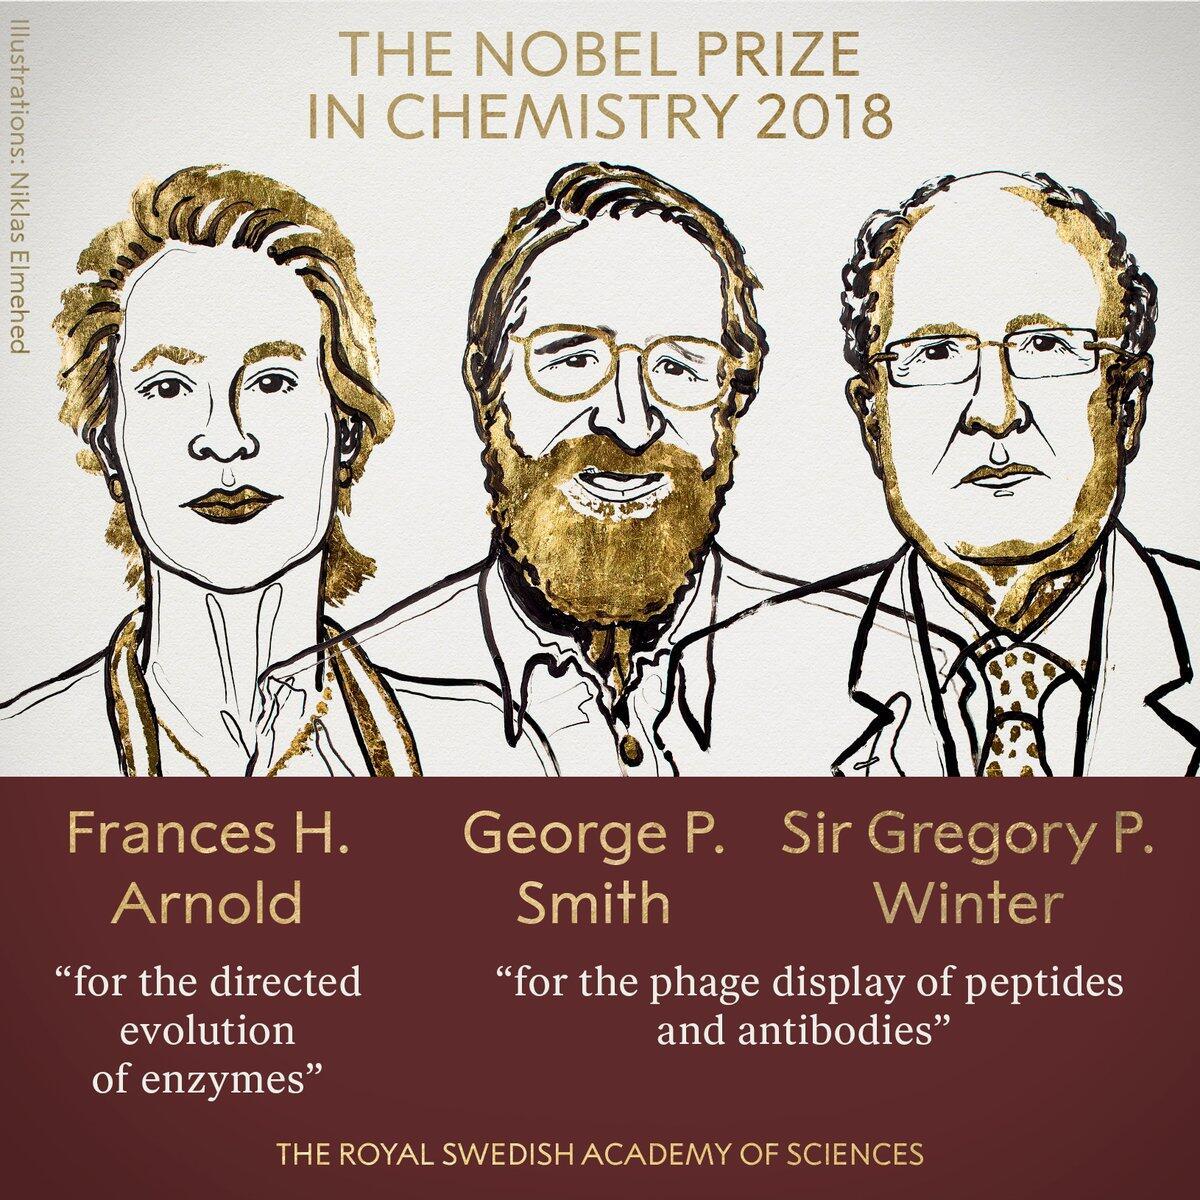 2018年诺贝尔化学奖揭晓 美英3位科学家分享殊荣